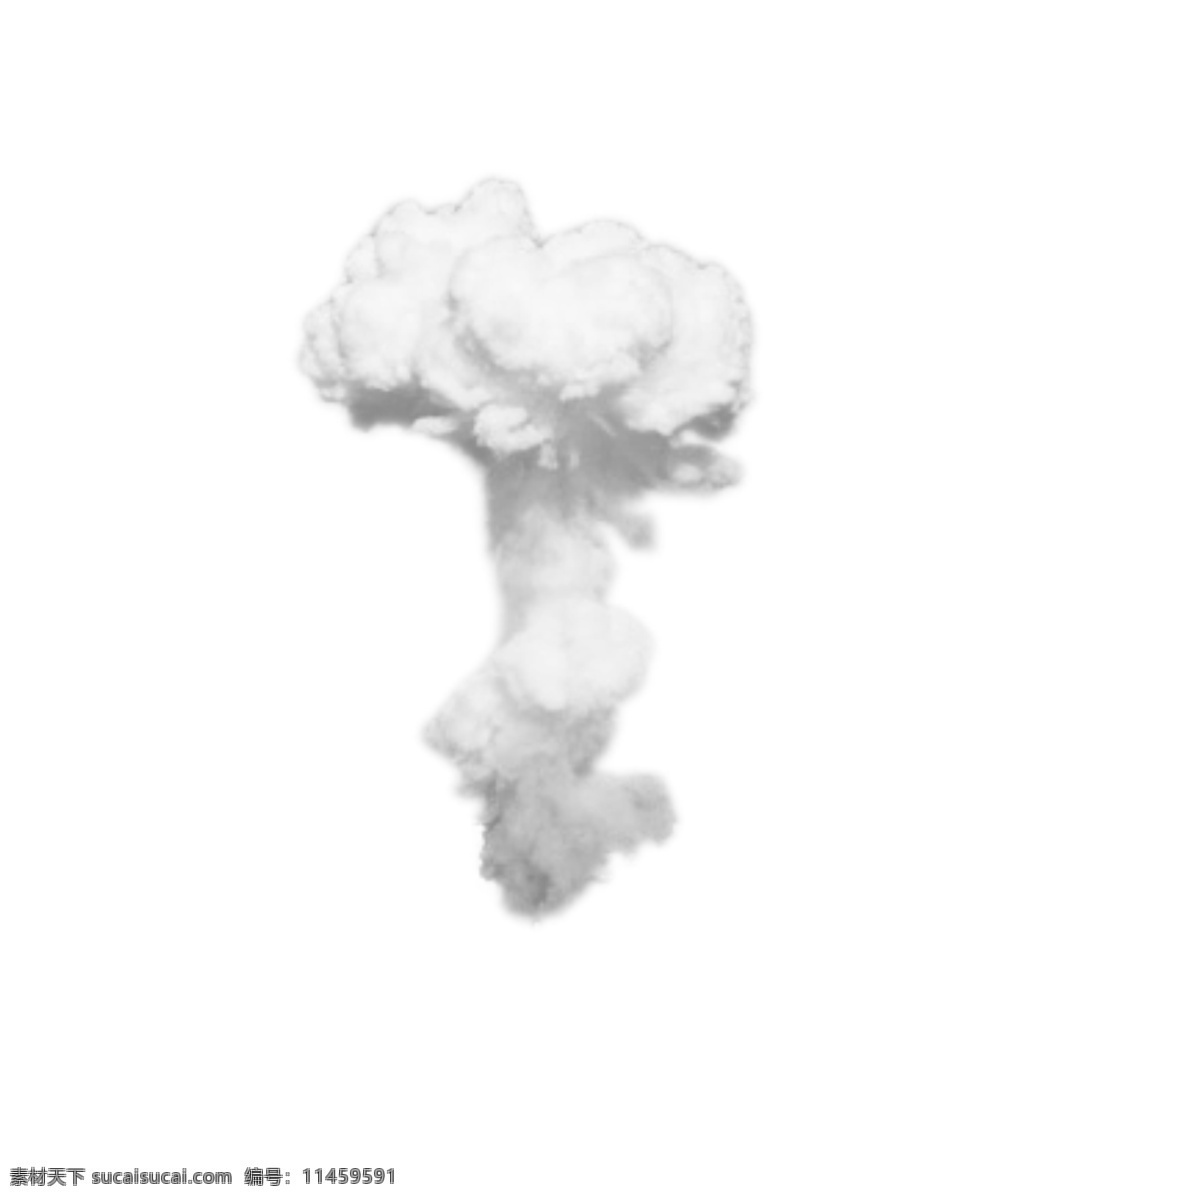 白色 壮丽 蘑菇云 创意 抽象 惊奇 美丽 装饰 商务 卡通手绘 不规则图形 云朵 晕染 中国风